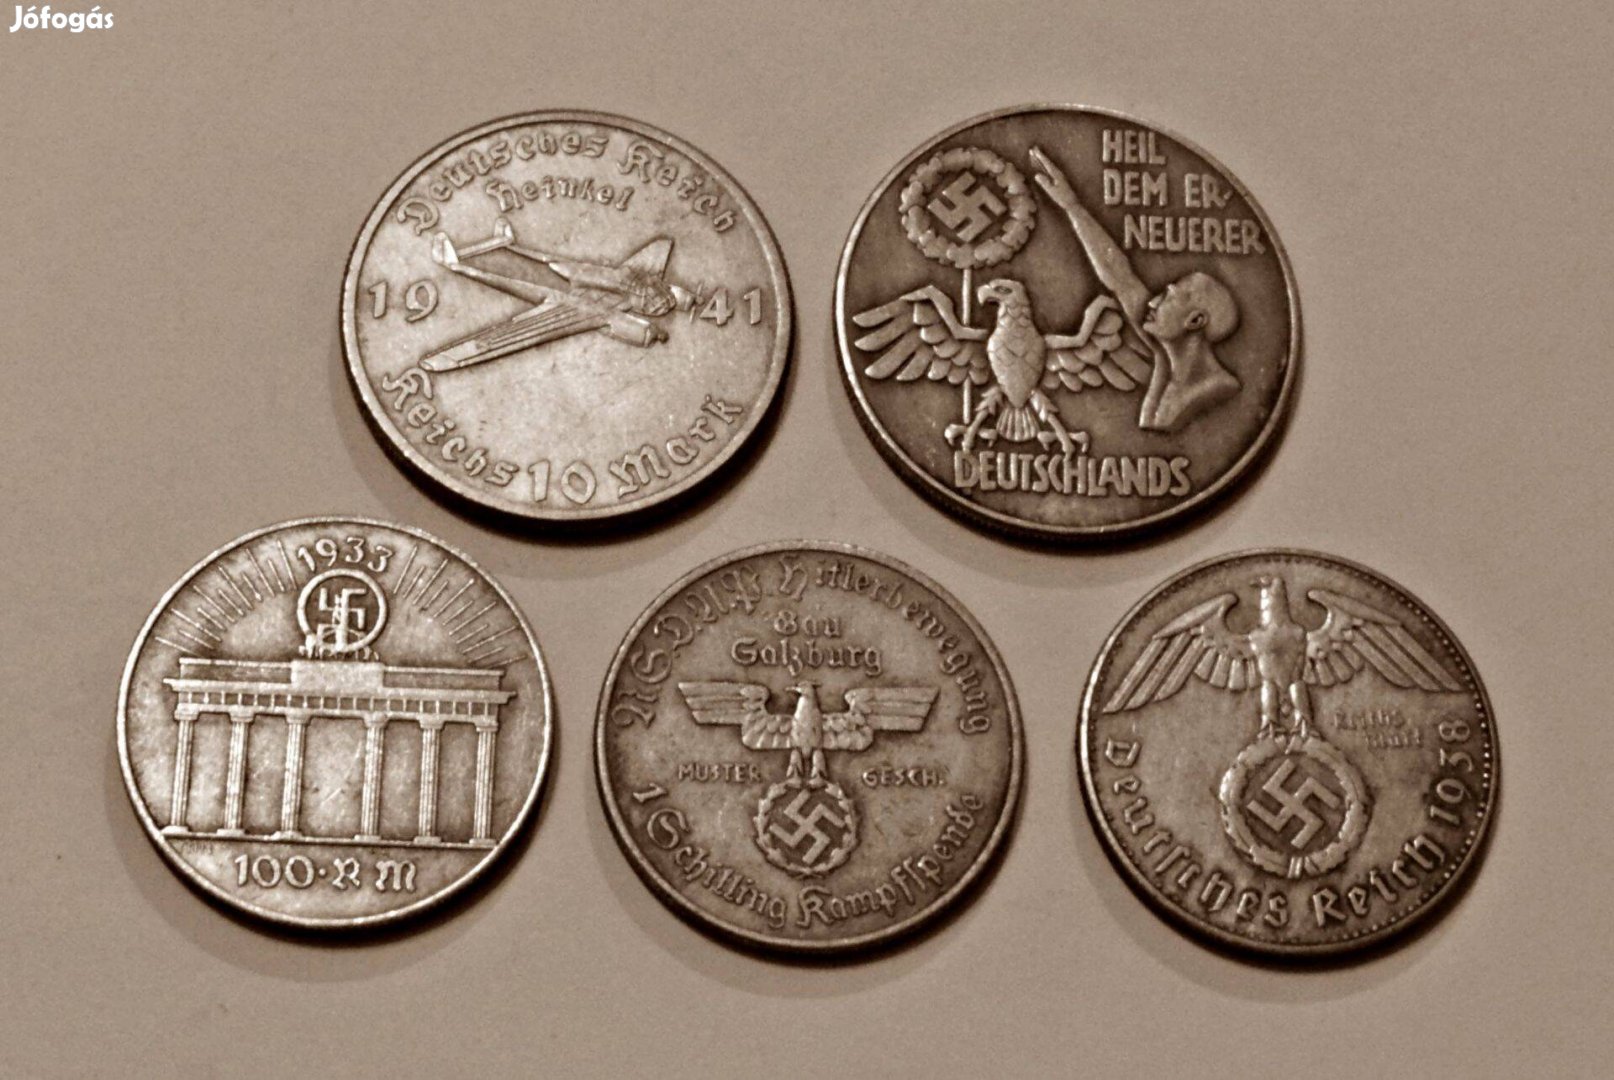 5 darab német náci birodalmi érme Hitler arcképével